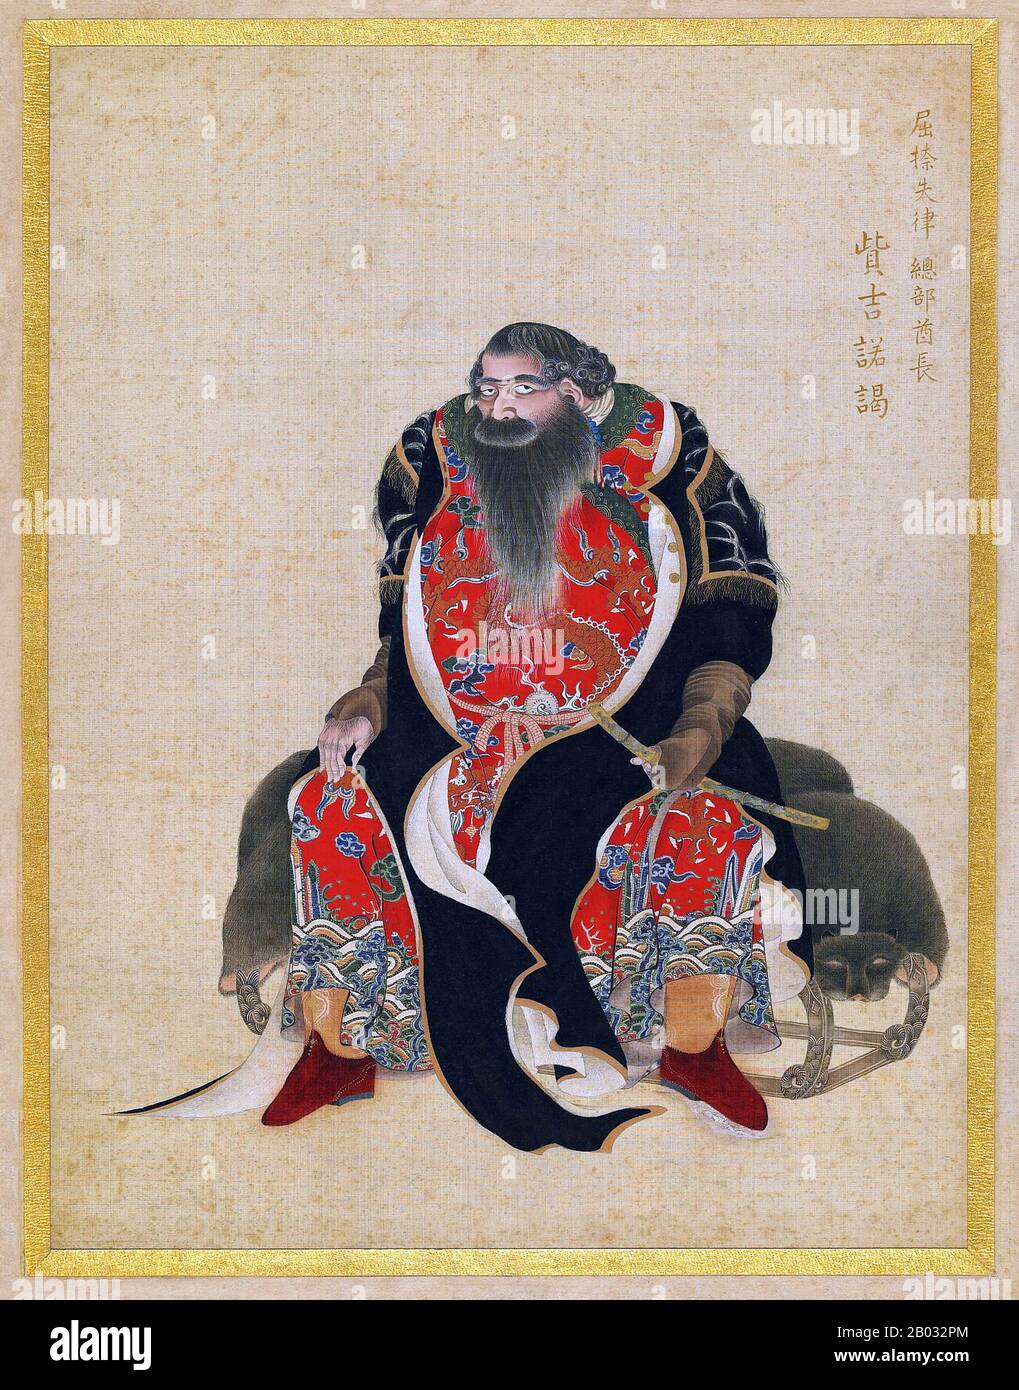 Kakizaki Hakyo (25. Juni 1764 - 26. Juli 1826) war ein Samurai-Künstler aus dem Matsumae-Clan. Sein erster Erfolg war eine Gruppe von 12 Porträts namens "The Ishu Retsuzo". Die Porträts waren von 12 Ainu-Chefs aus dem nördlichen Bereich von Ezo, heute Hokkaido. Stockfoto